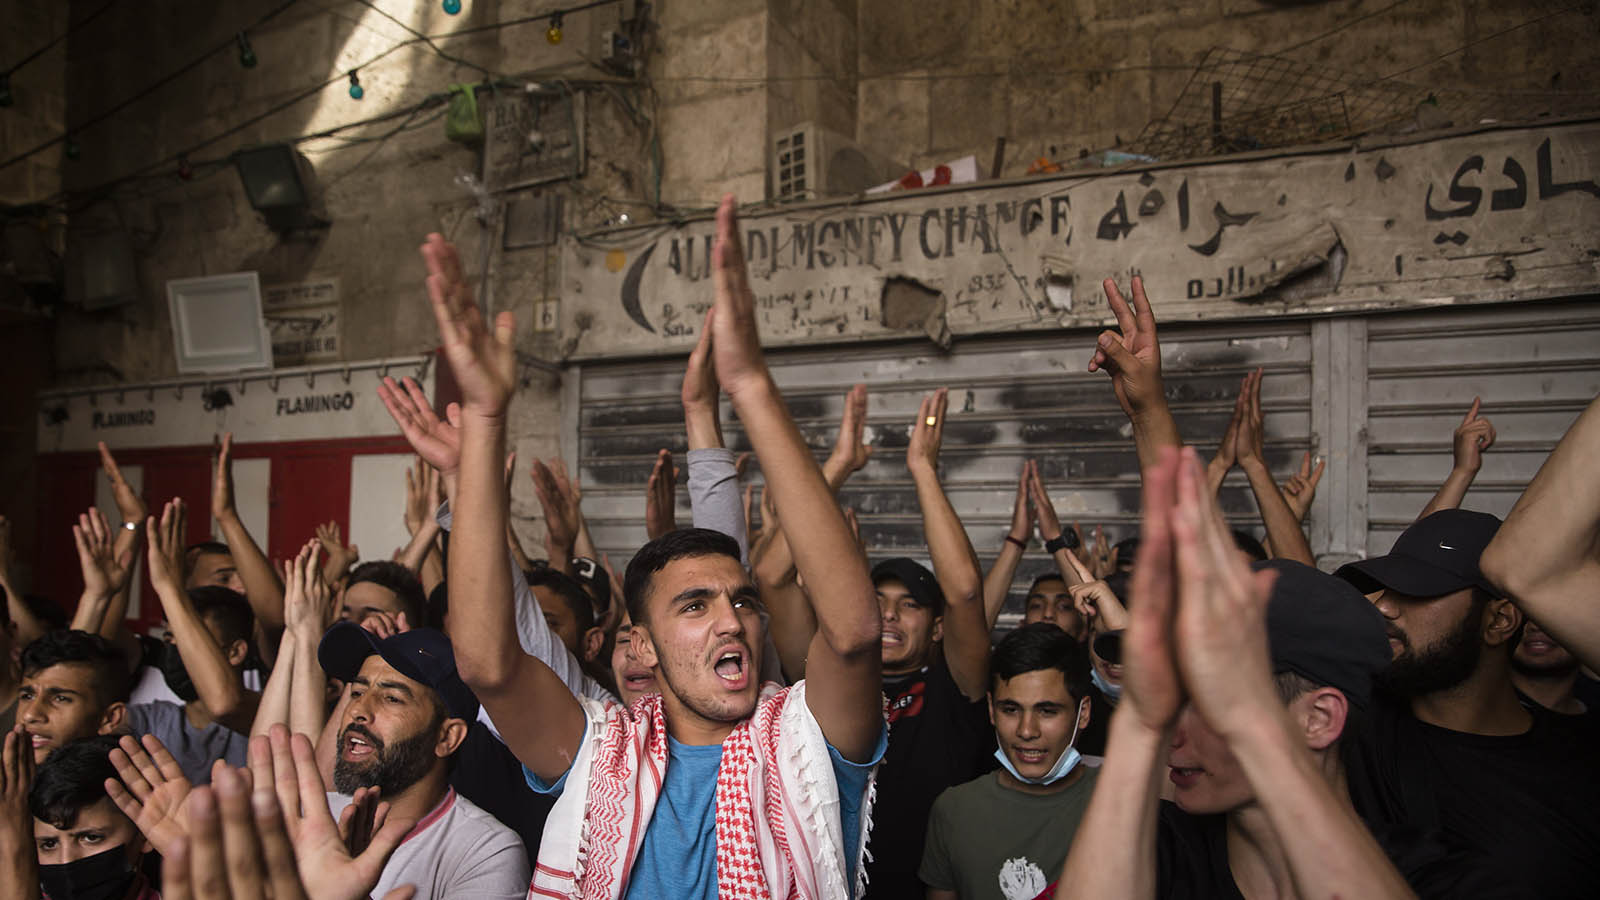 הפגנה בעיר העתיקה ביום ירושלים 2021. "יש צד אחד שיש לו רגשות לאומיים מודחקים ואחת לזמן מה, כשהתנאים מבשילים, קורה פיצוץ" (צילום: Amir Levy/Getty Images)